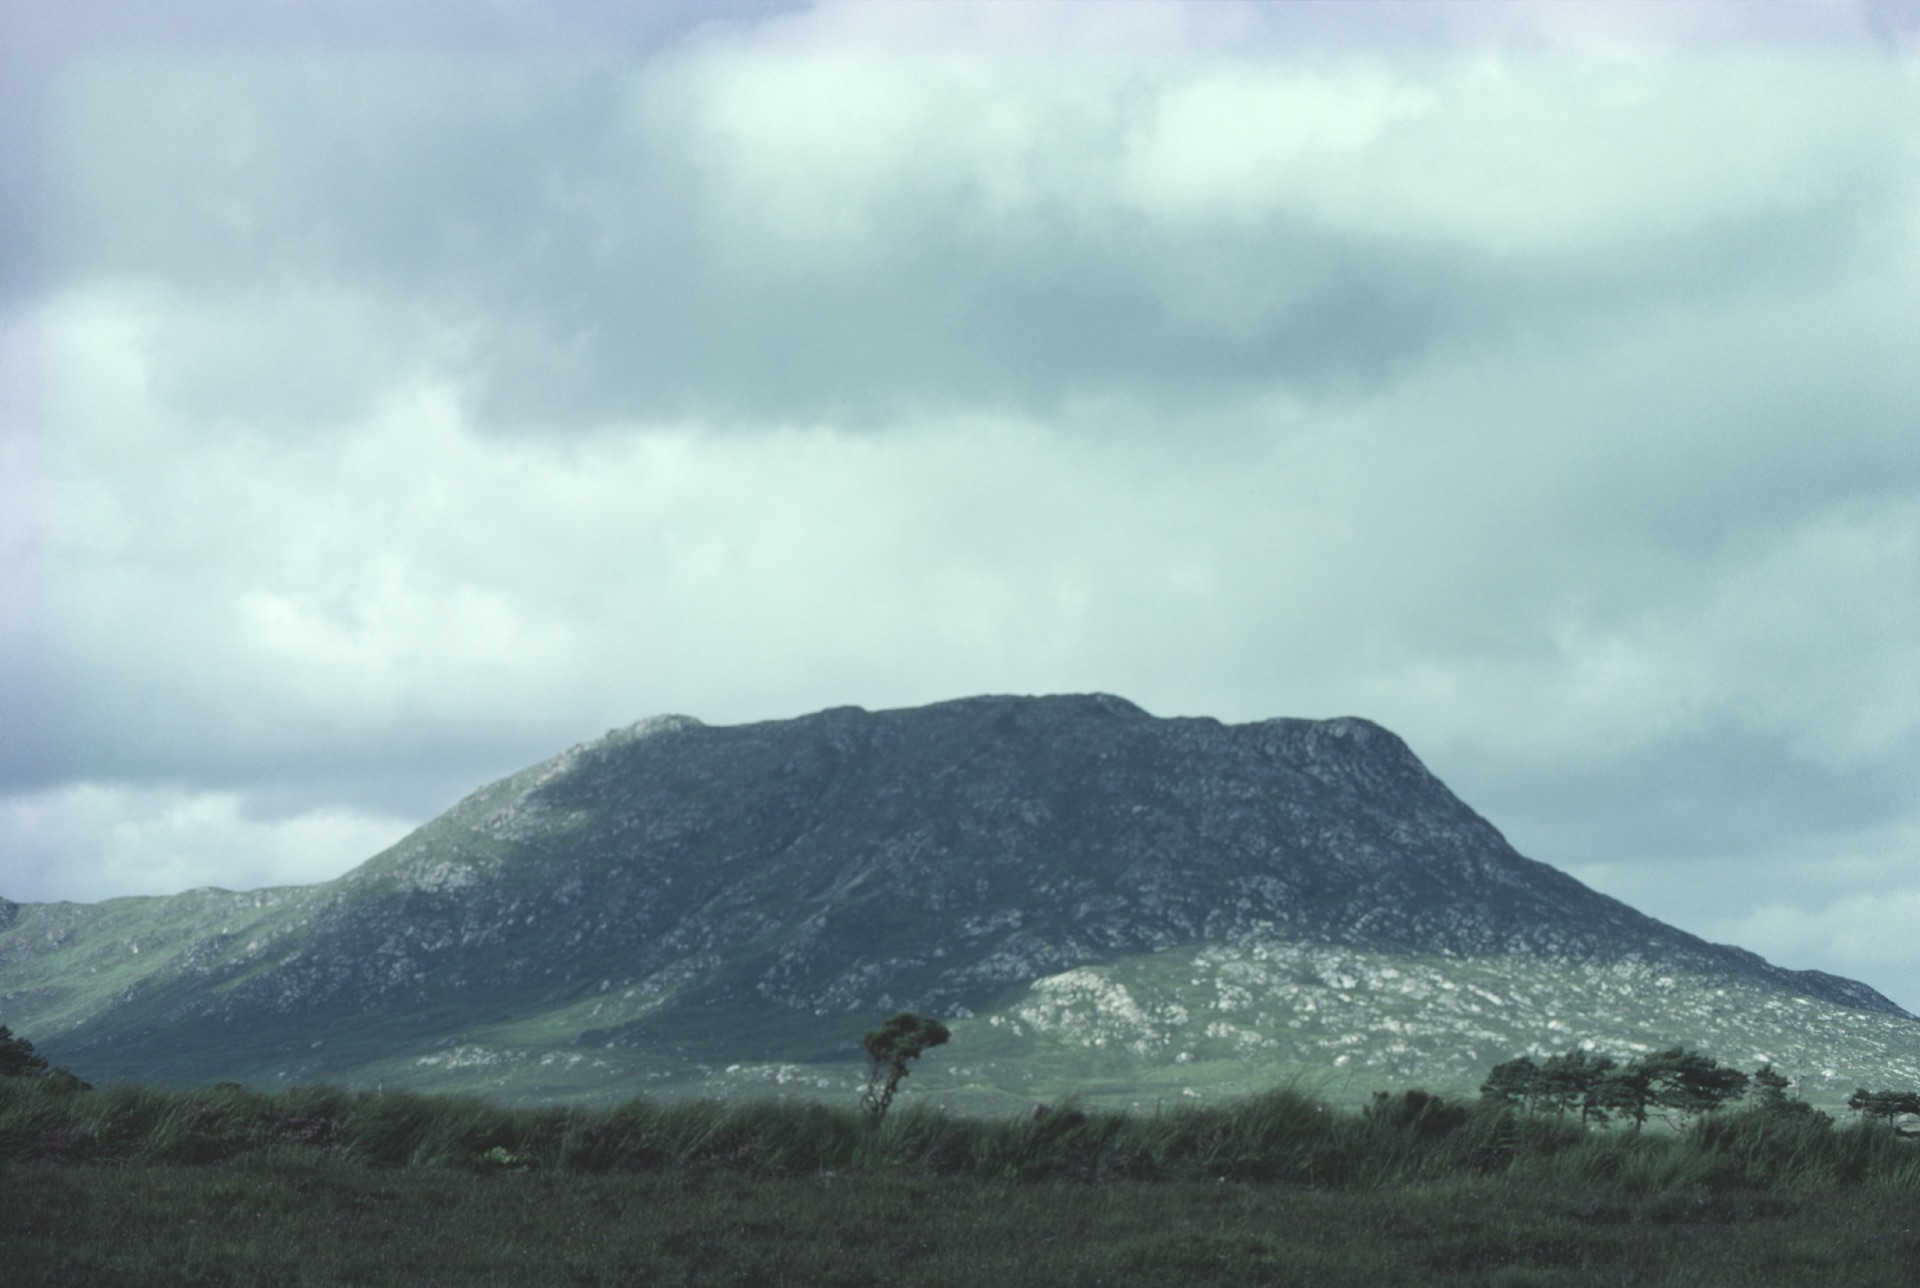 Small Tree and Hill near Maam, Connemara